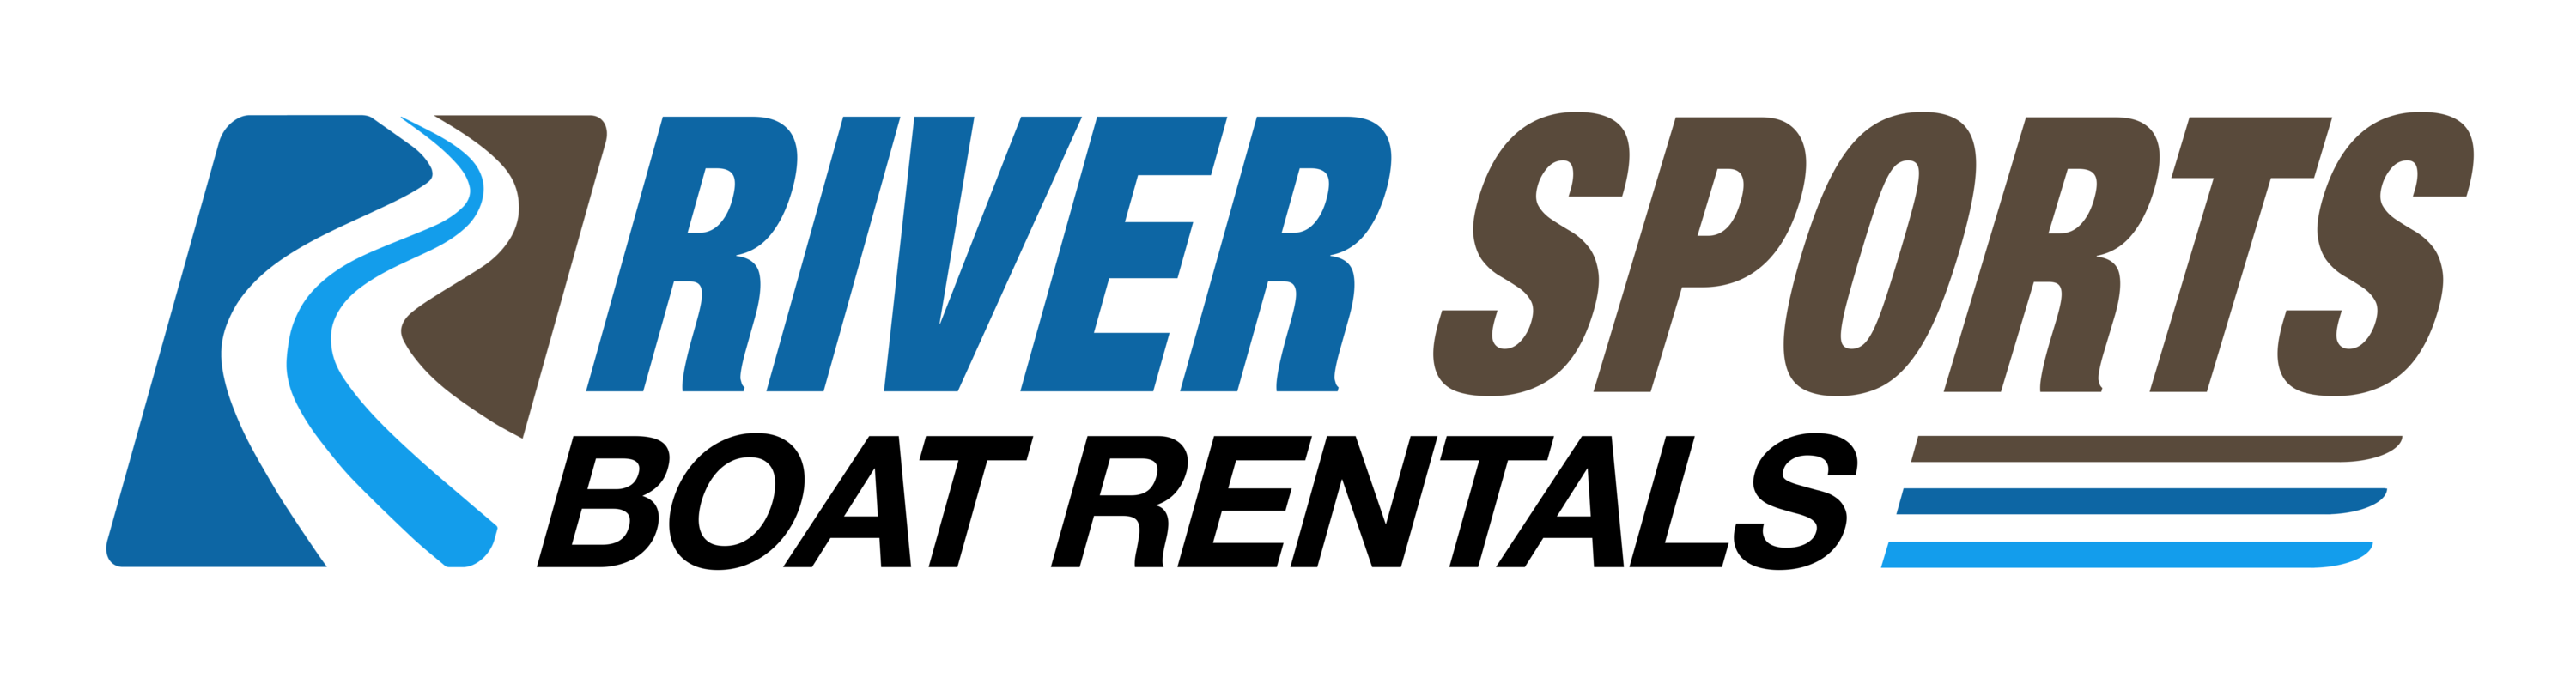 River Sports Boat Rentals Logo